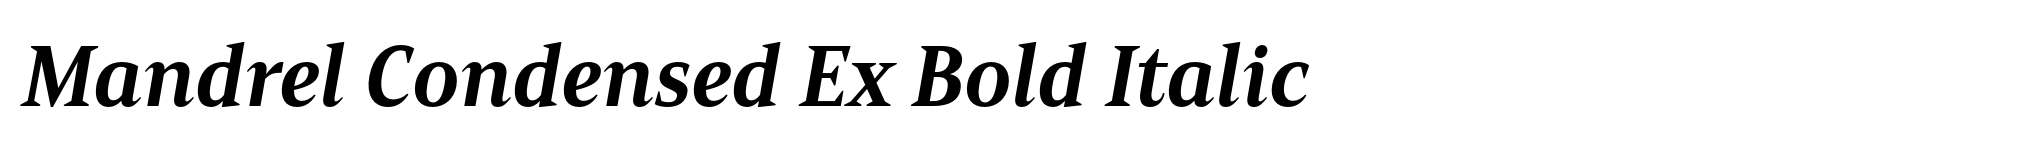 Mandrel Condensed Ex Bold Italic image